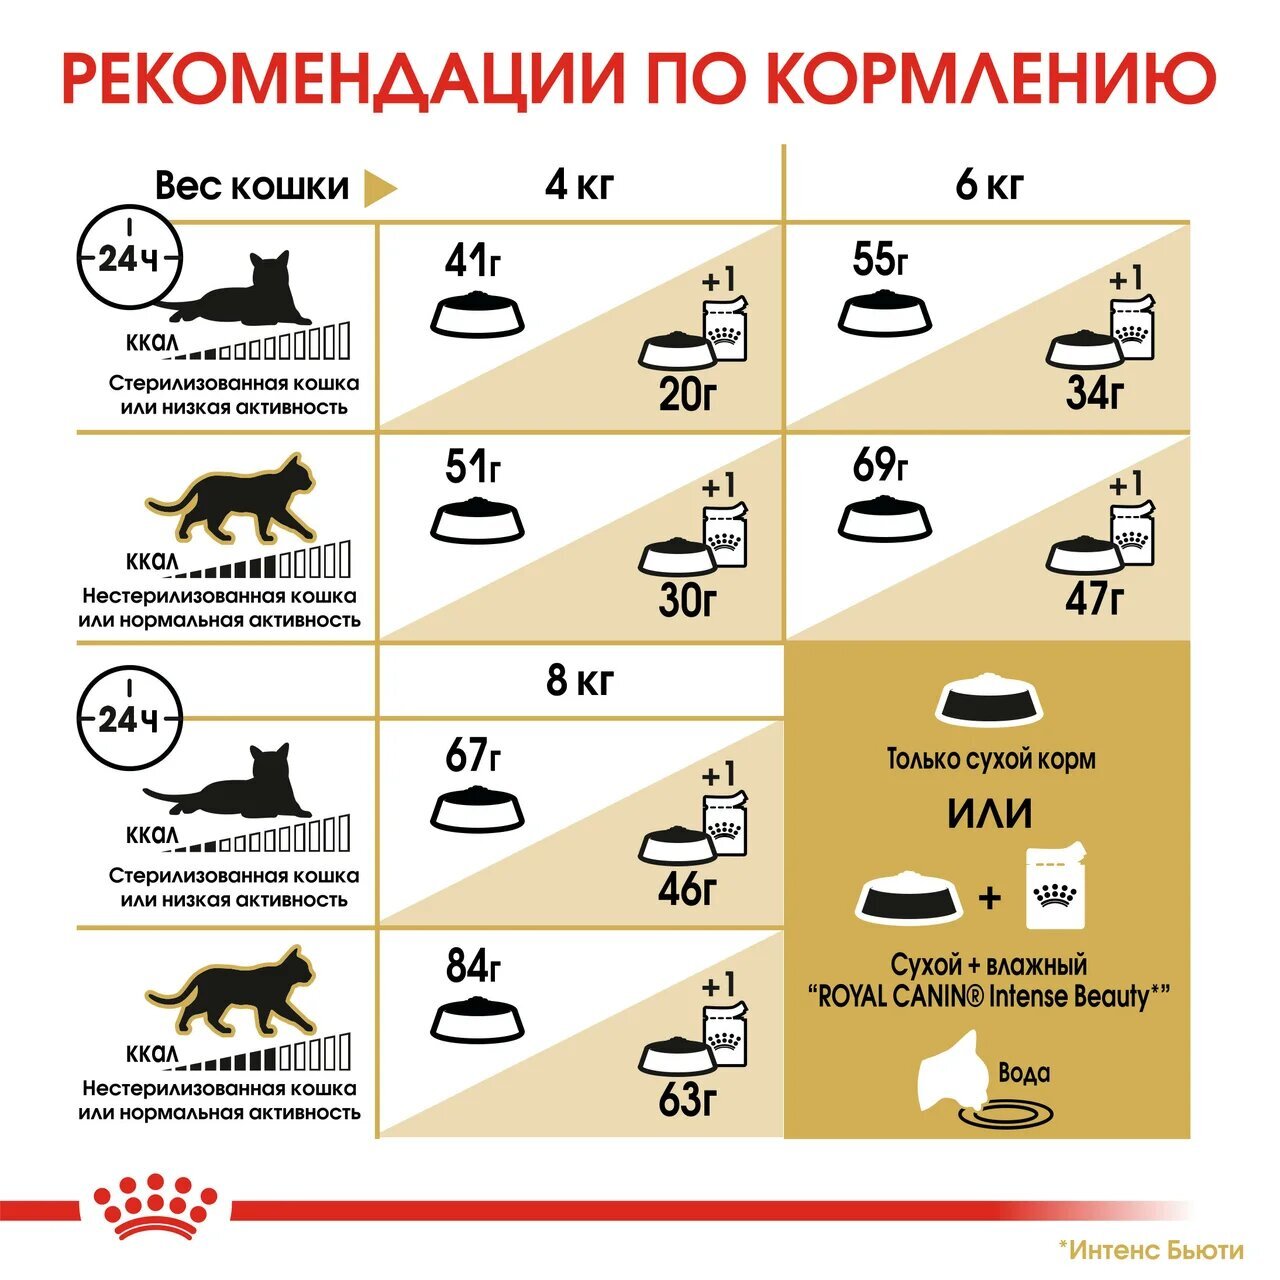 Корм для кошек сибирской породы, Royal Canin Siberian, в возрасте от 1 года  и старше купить с доставкой в интернет-магазине зоогастроном.ру